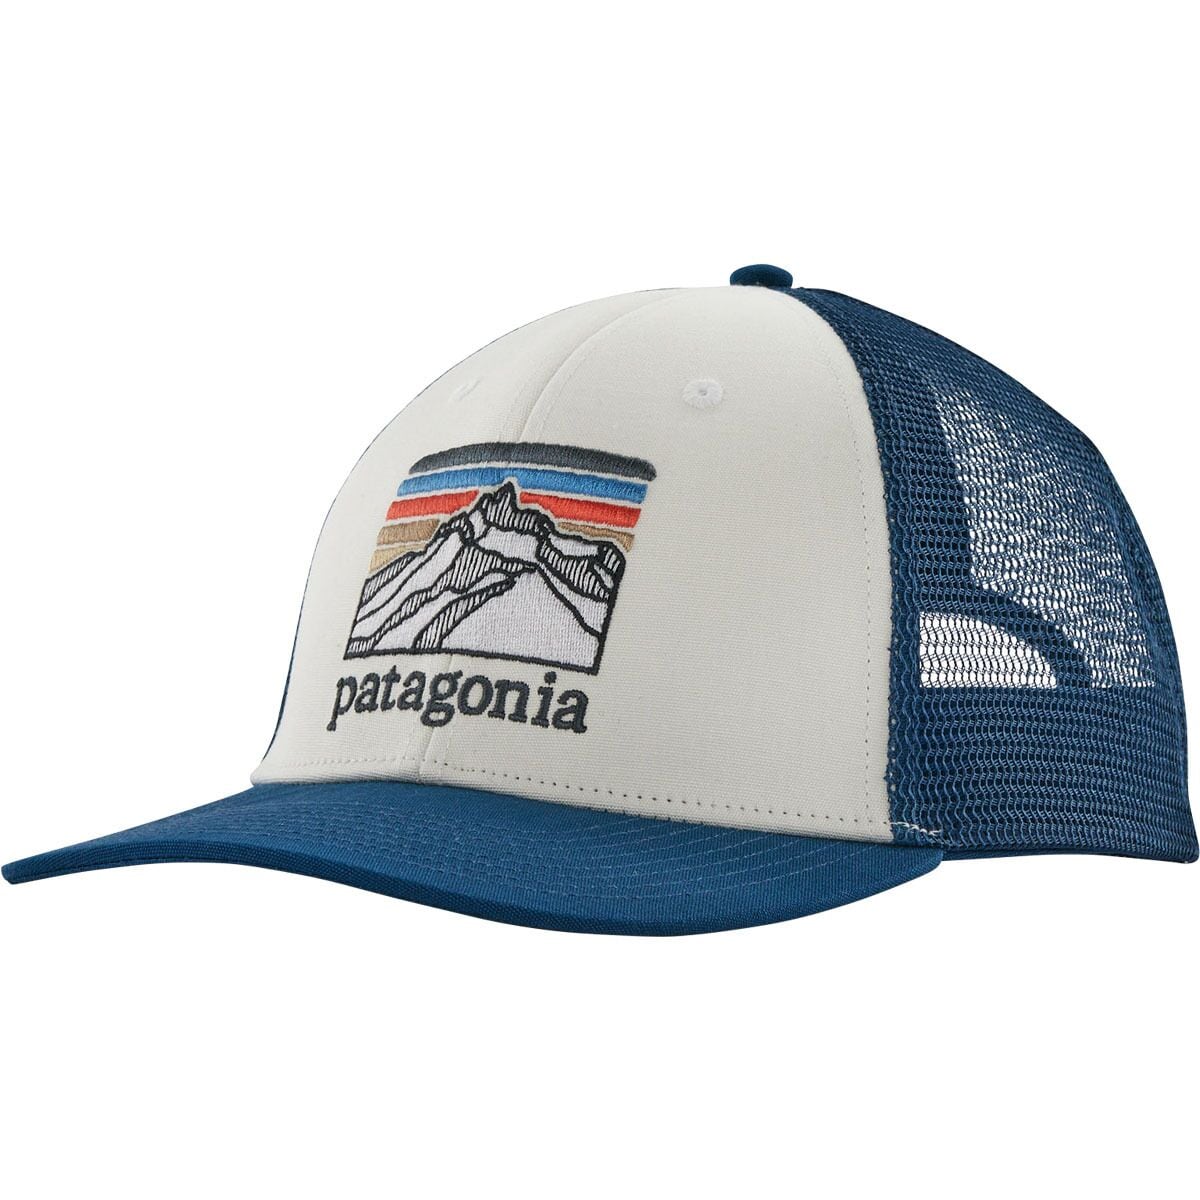 Patagonia Men's Hats